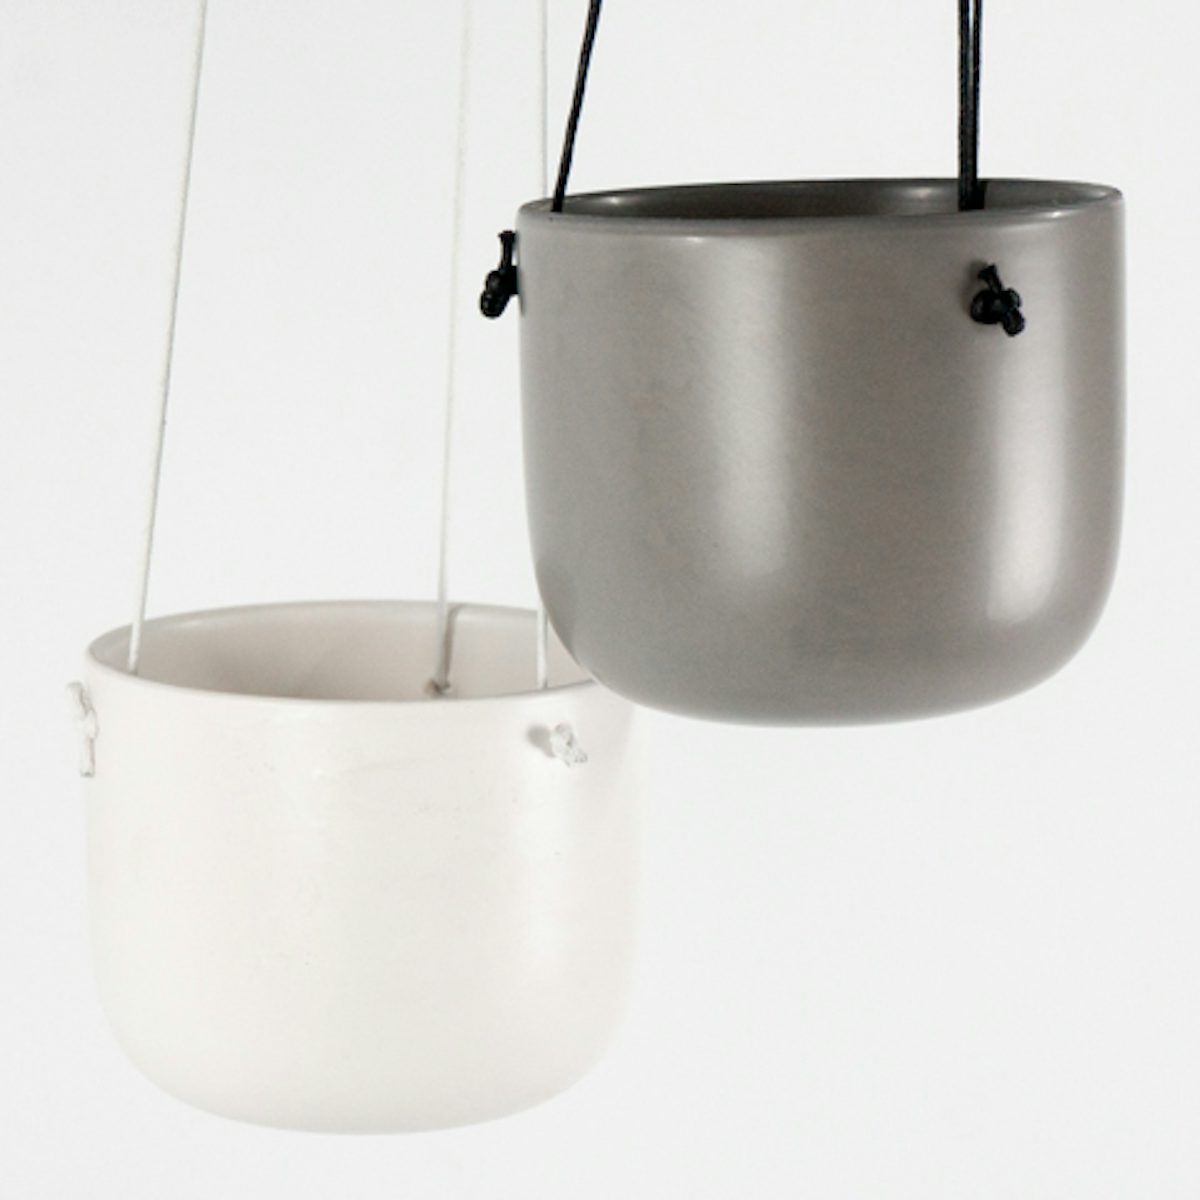 Dou cache-pots suspendus Grey & Wite